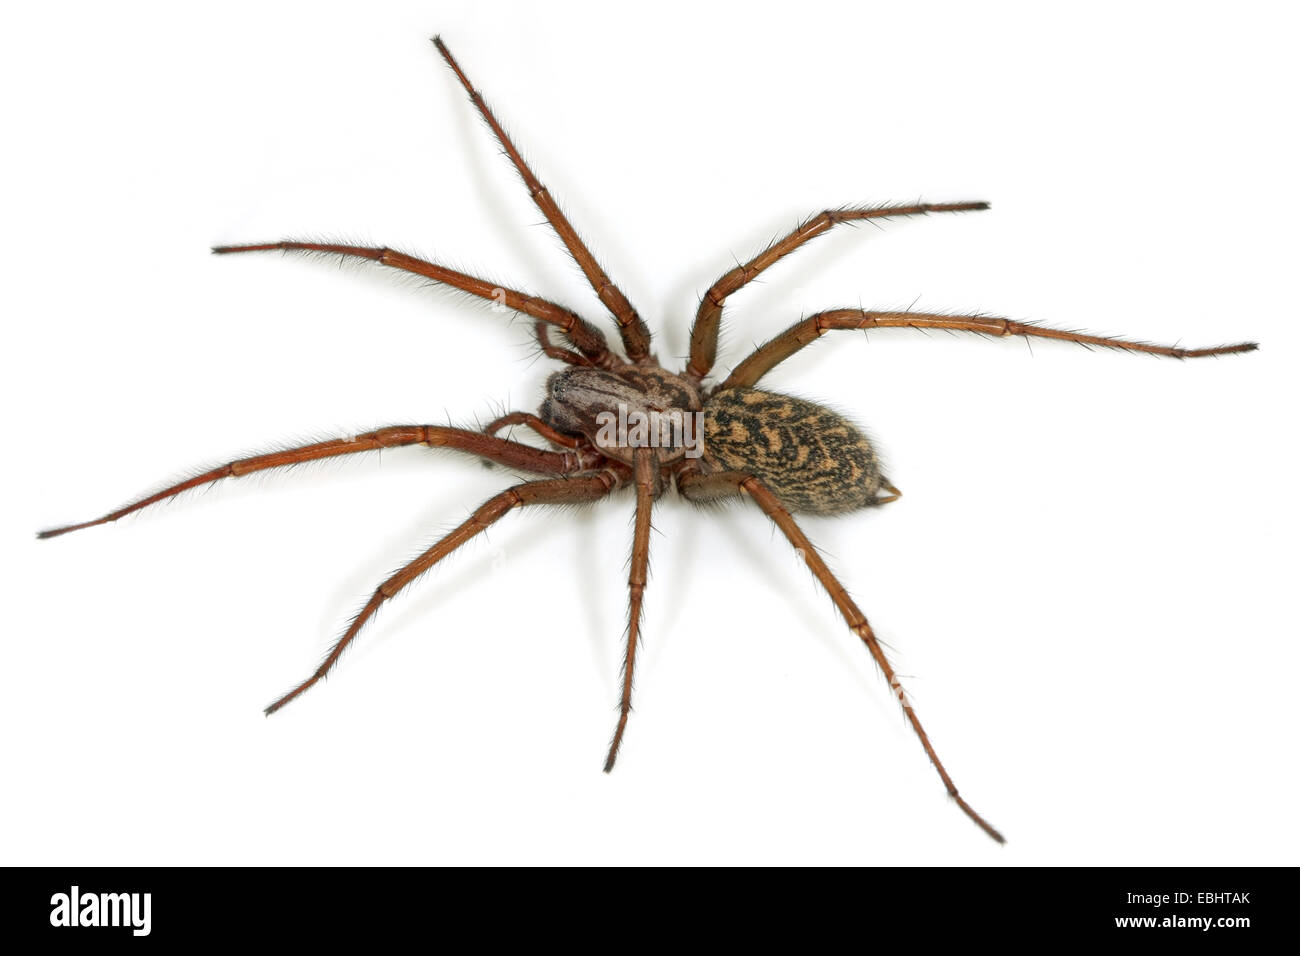 Eine weibliche Haus Spinne (Tegenaria atrica). Diese Spinne ist eine der größten Haus spinnen, Teil der Familie Agelenidae, Funnel Web Weber. Stockfoto